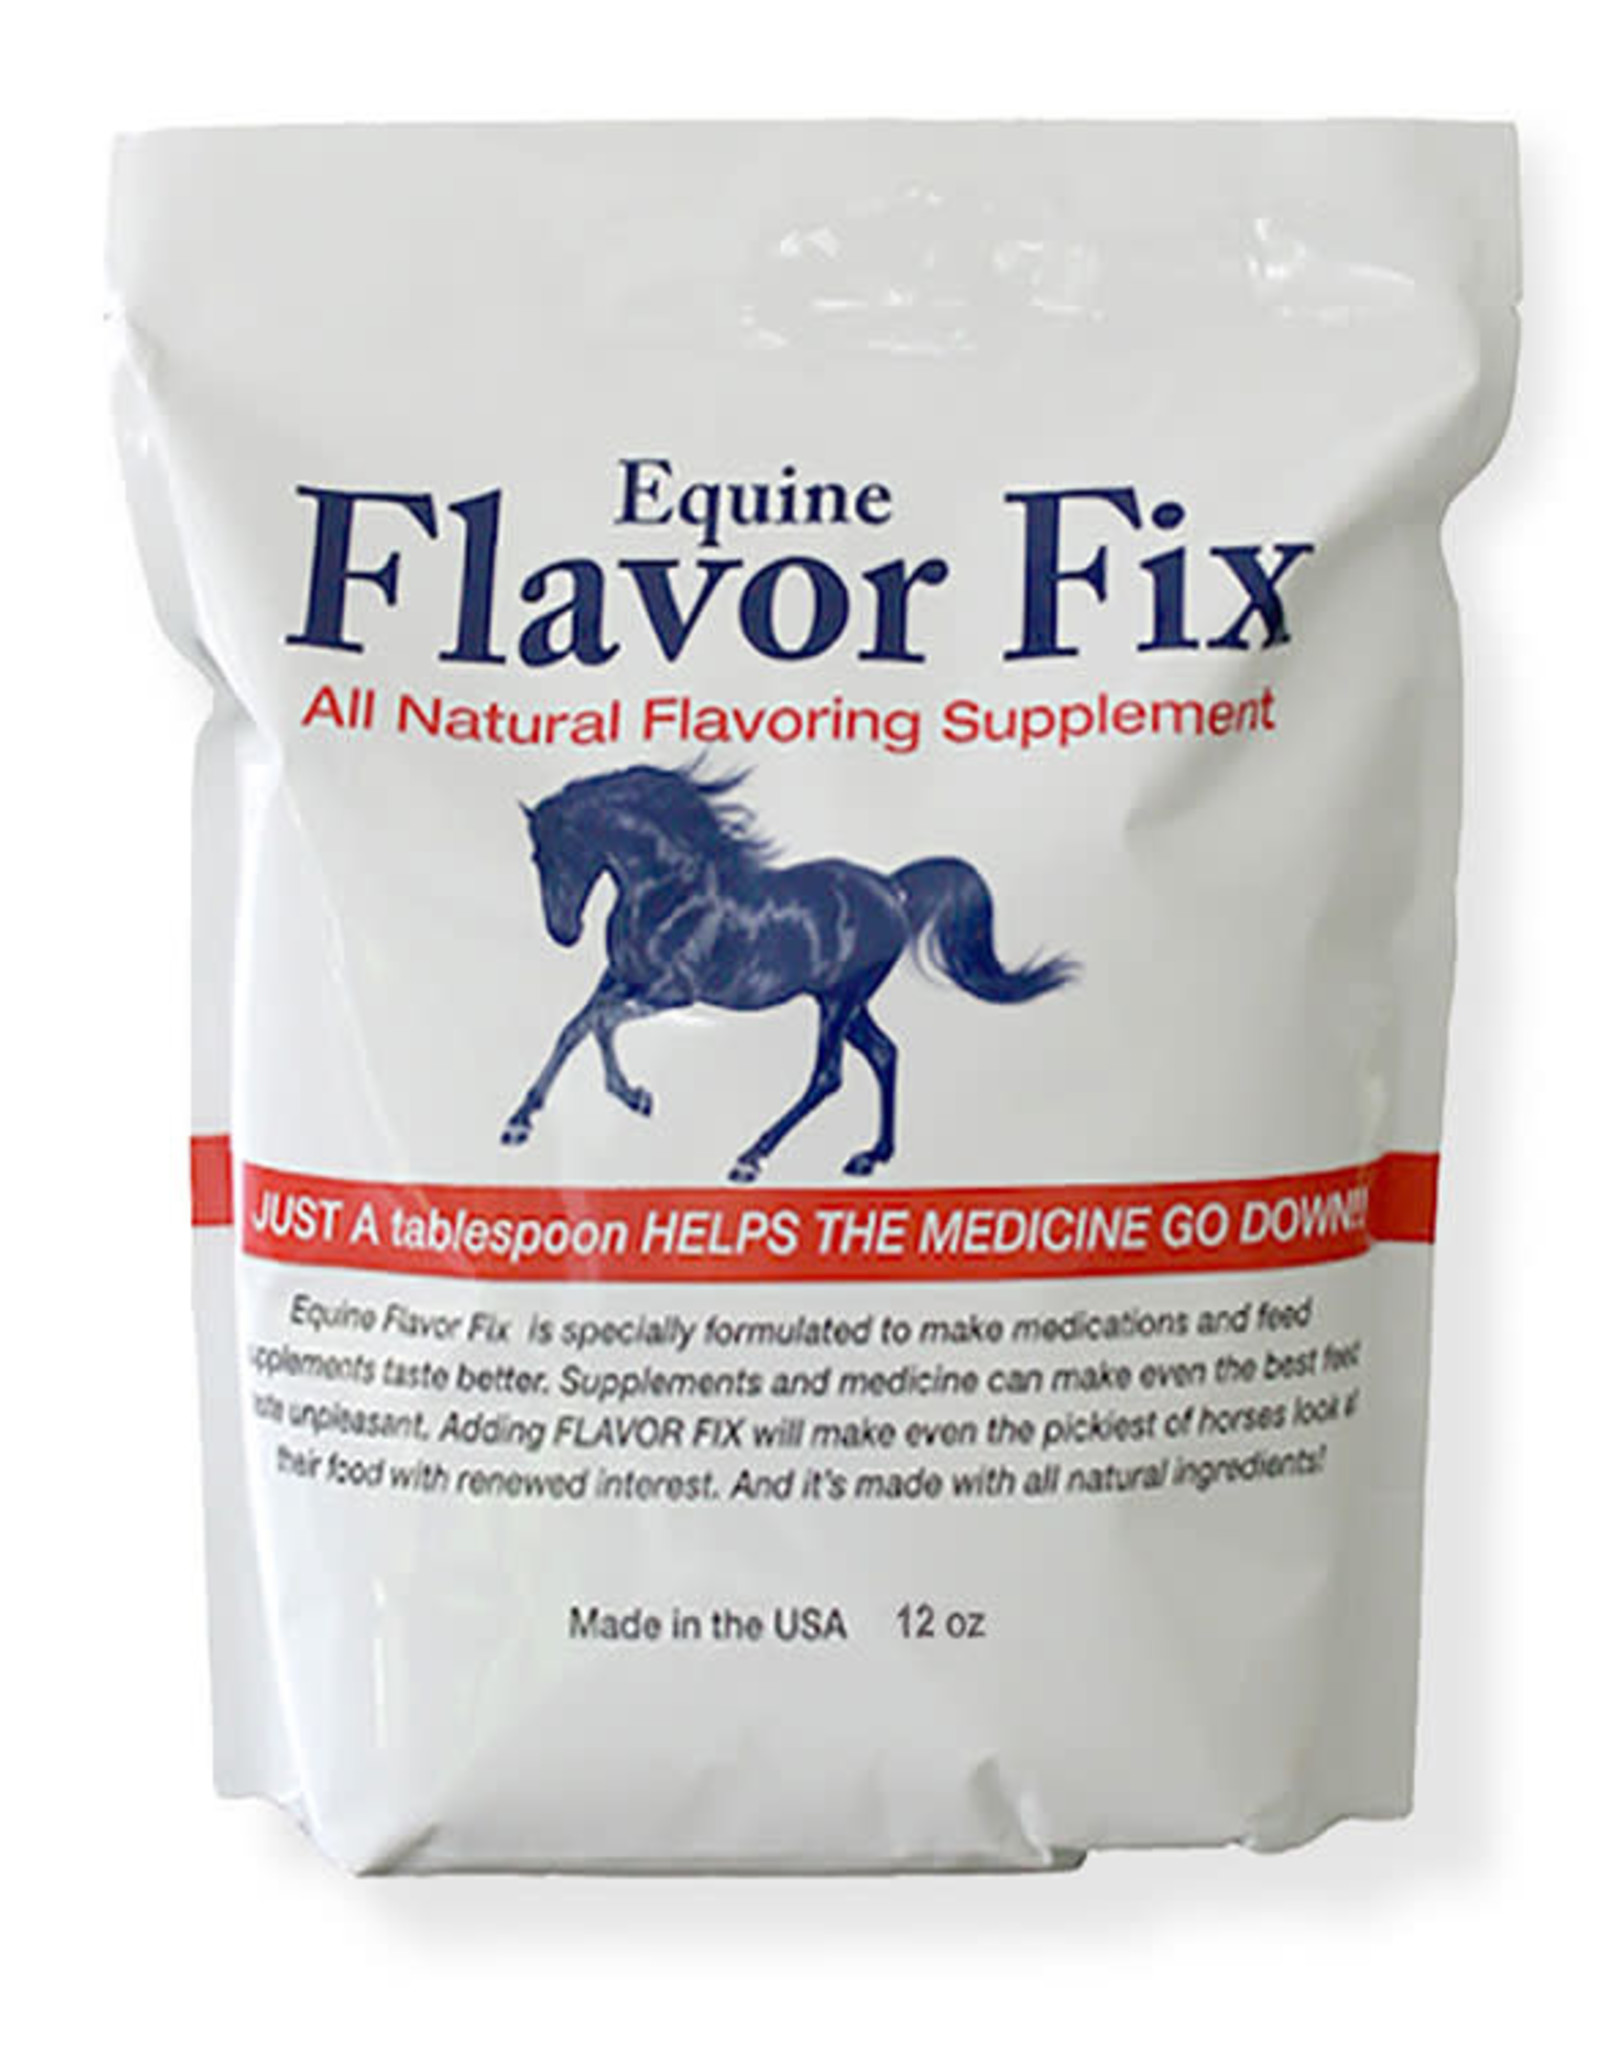 Equine Flavor Fix